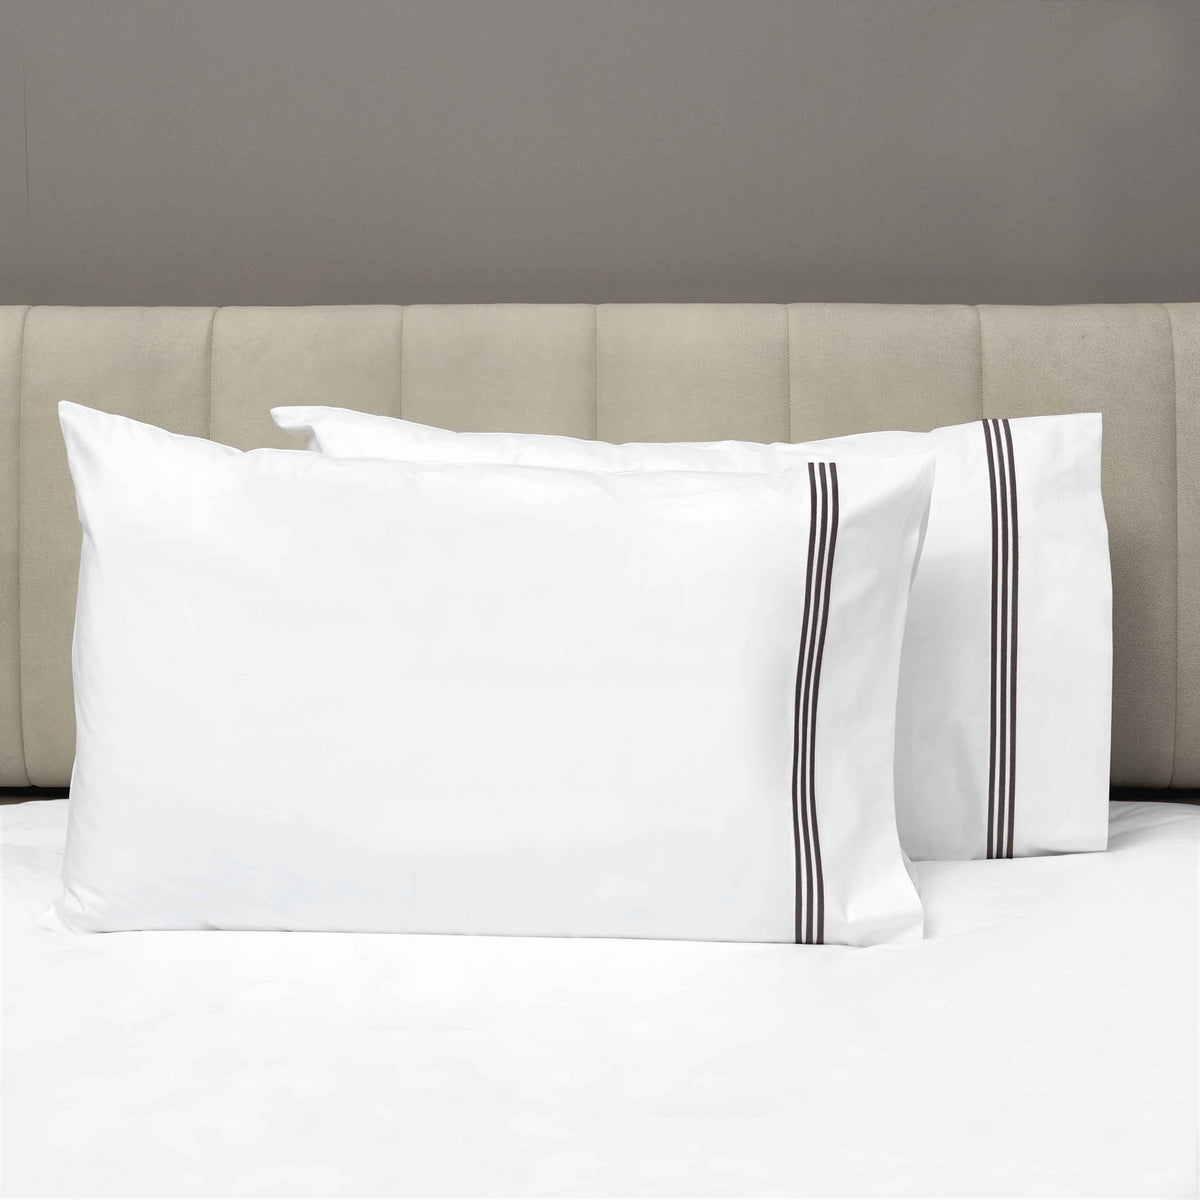 Pair of Pillowcases of Signoria Platinum Percale Bedding in White/Espresso Color